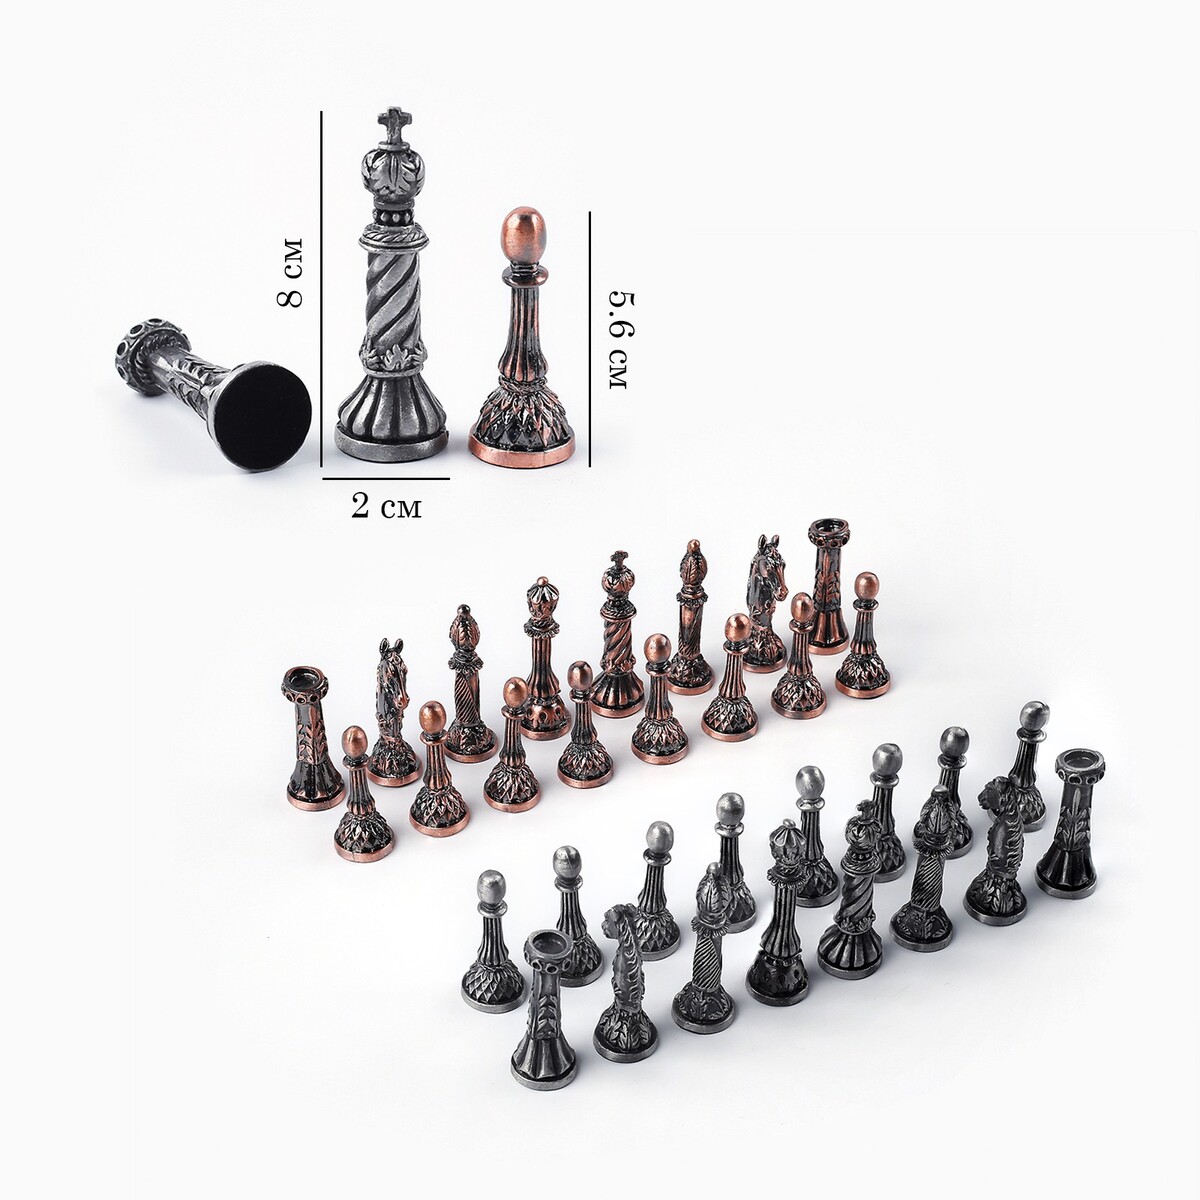 Шахматные фигуры сувенирные, h короля-8 см, пешки-5.6 см, d-2 см новое платье короля нов оф